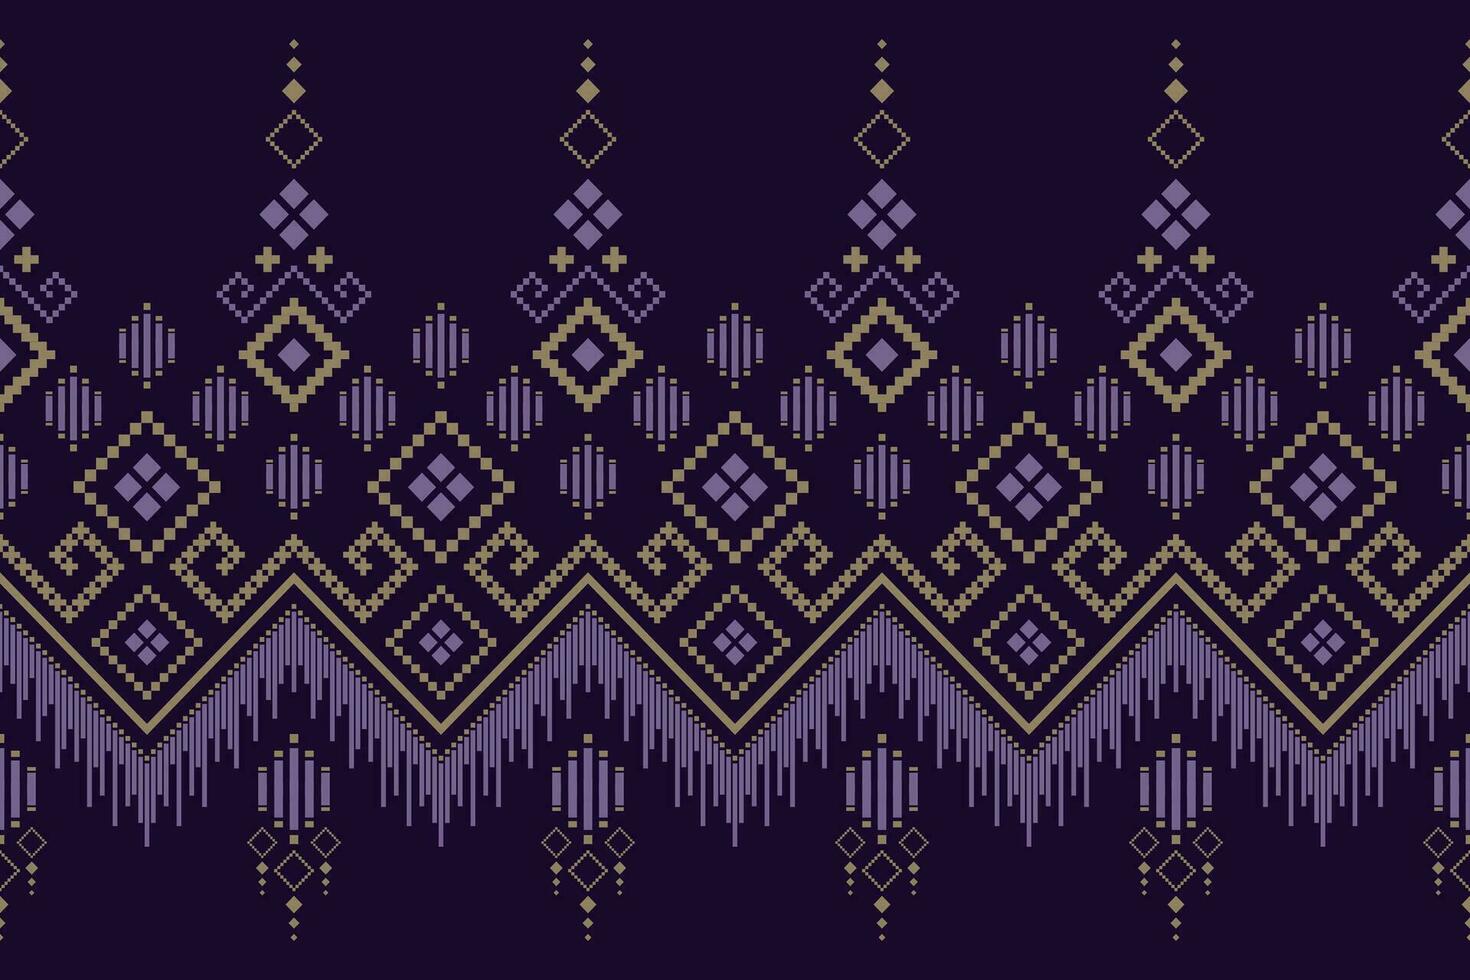 púrpura cruzar puntada tradicional étnico modelo cachemir flor ikat antecedentes resumen azteca africano indonesio indio sin costura modelo para tela impresión paño vestir alfombra cortinas y pareo de malasia vector